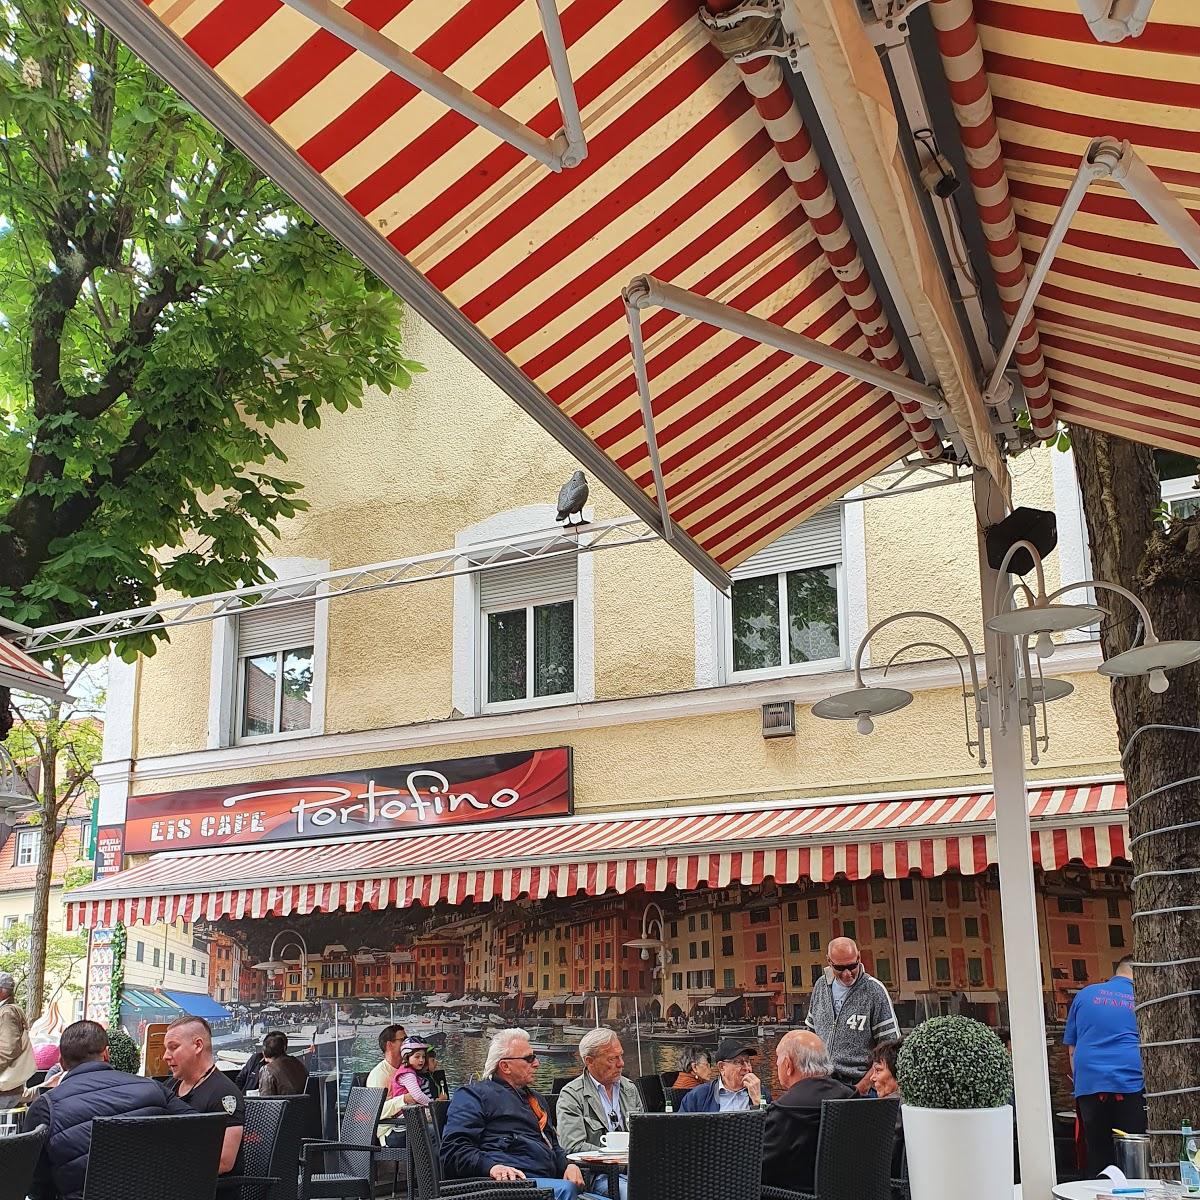 Restaurant "Portofino Eiscafé" in München